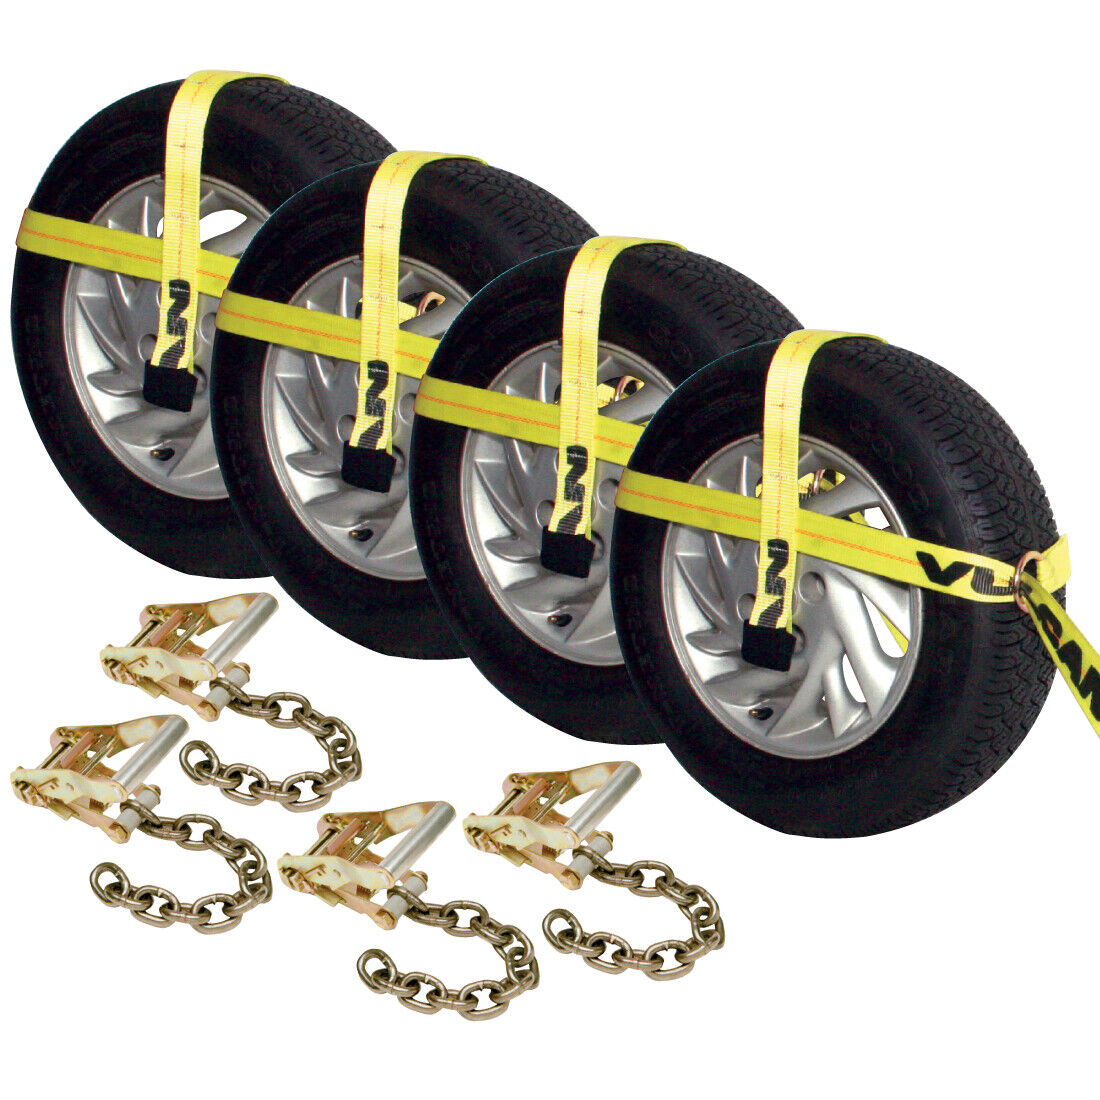 VULCAN Car Tie Down - Adjustable Loop - Chain Ratchet - 4 Pack - 3300 lbs SWL